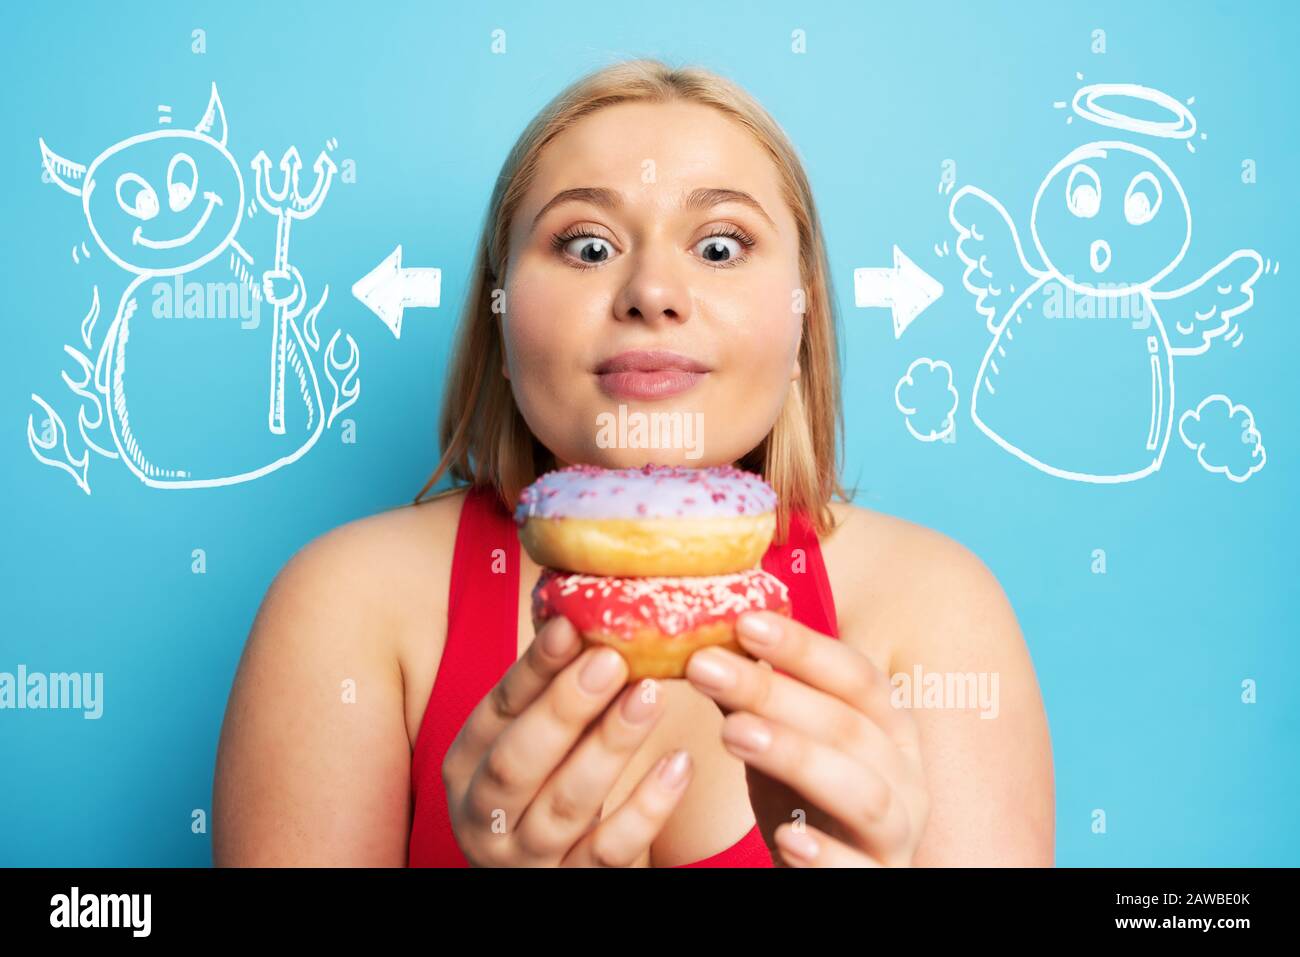 Fette Mädchen denkt, Donuts zu essen statt Turnhalle. Konzept der Unentschlossenheit und des Zweifels mit Angel- und Teufelsandeutung Stockfoto